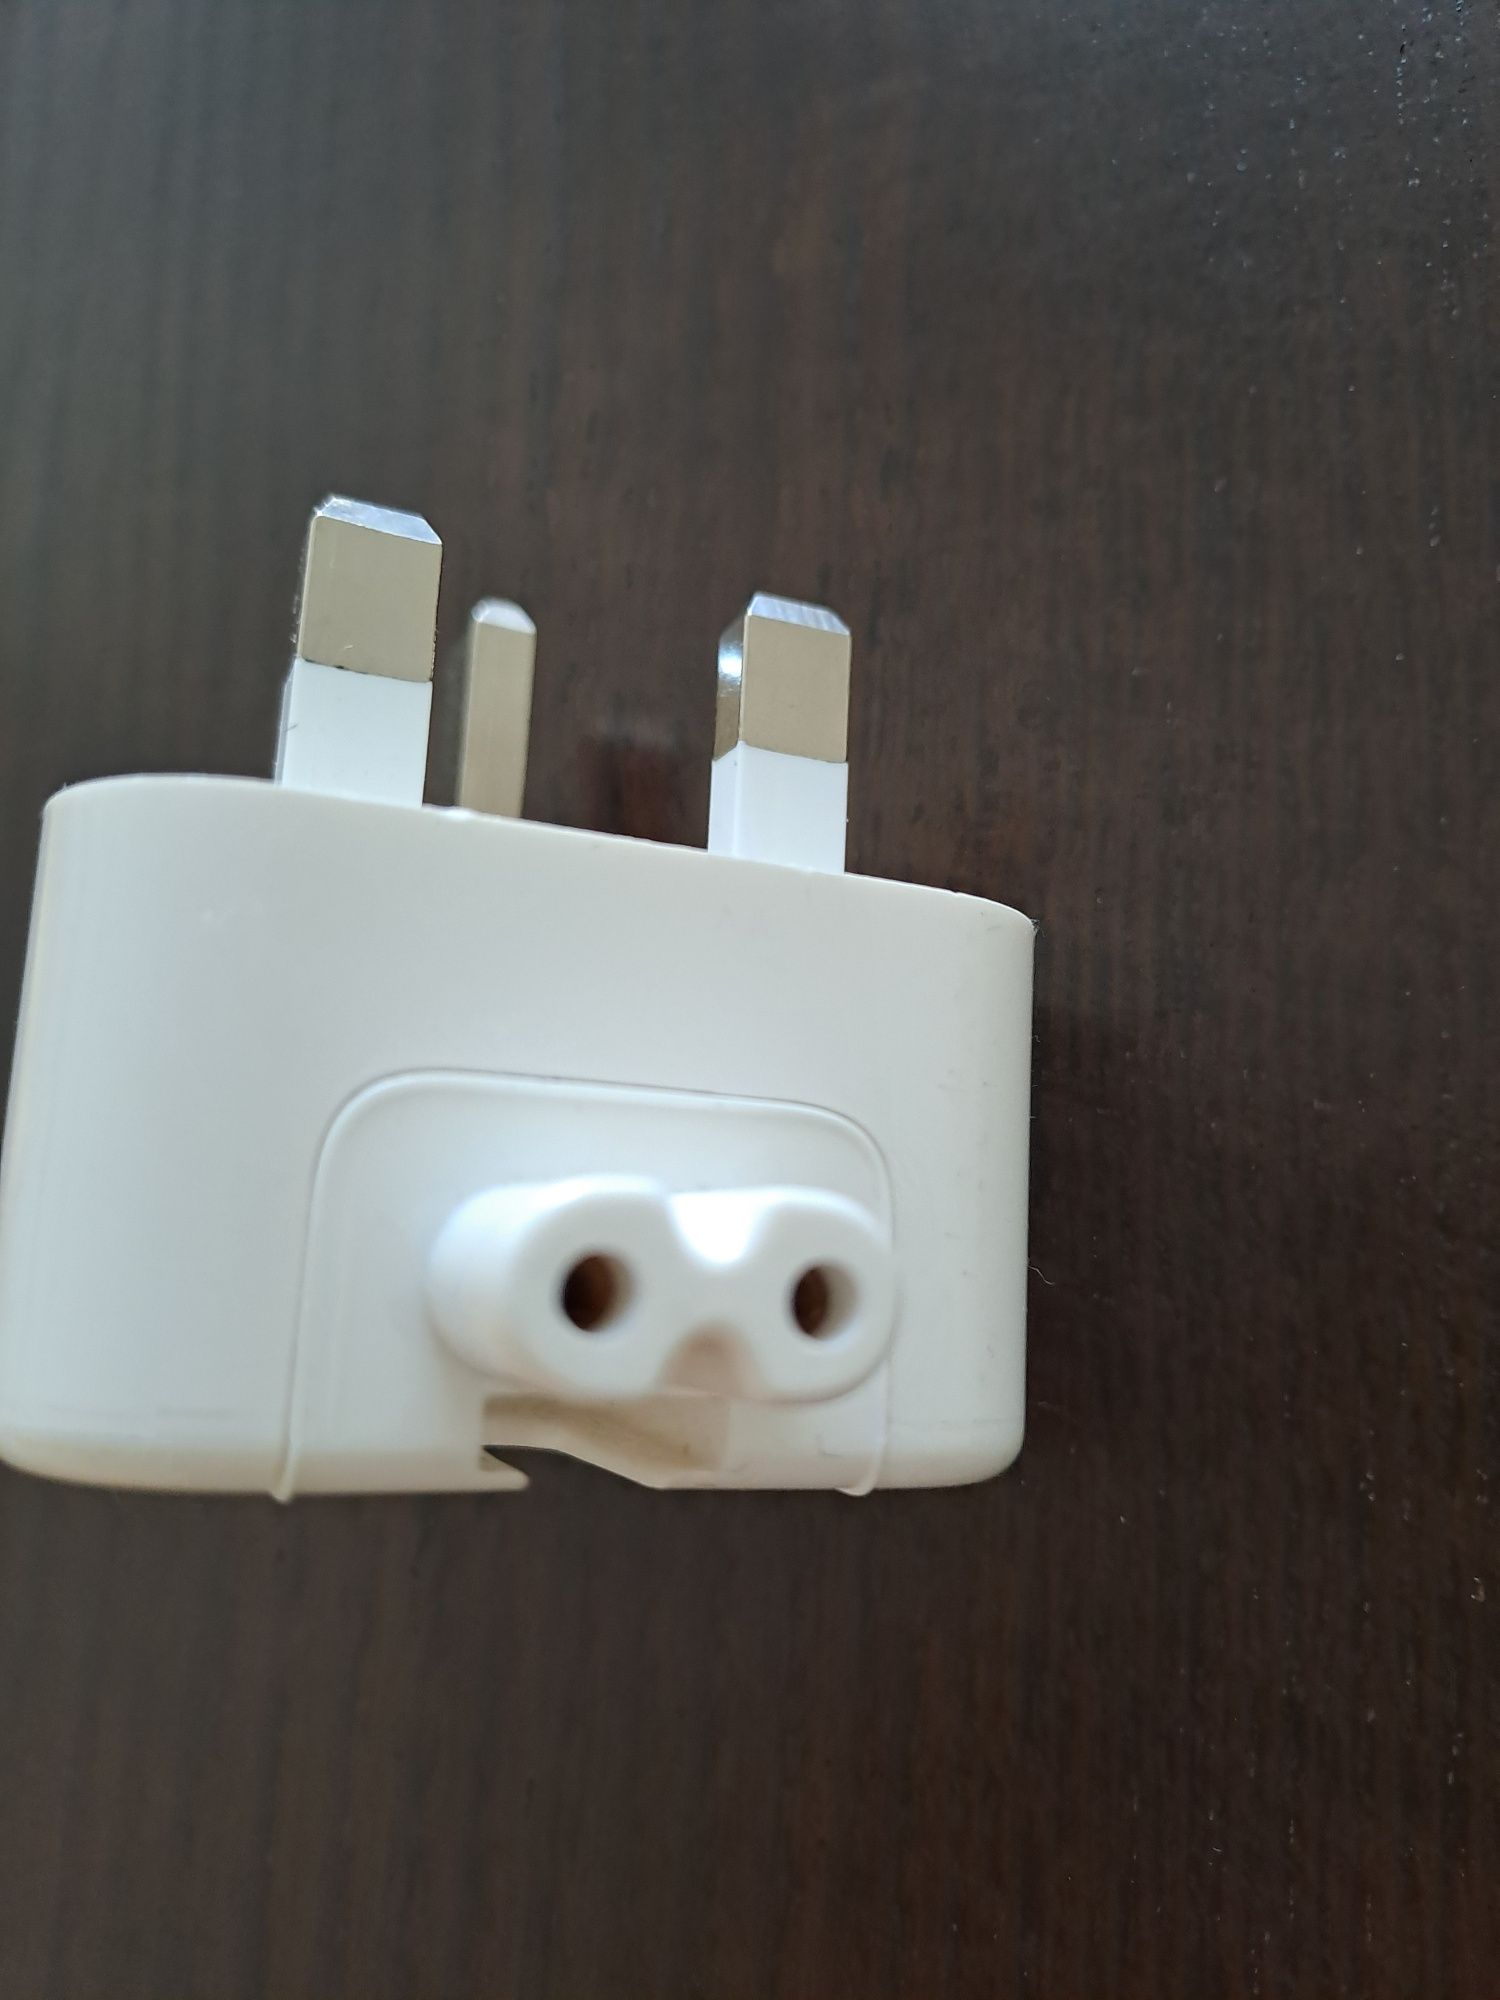 Вилка(plug) для устройств Apple в Англии. Хаб-адаптер USB